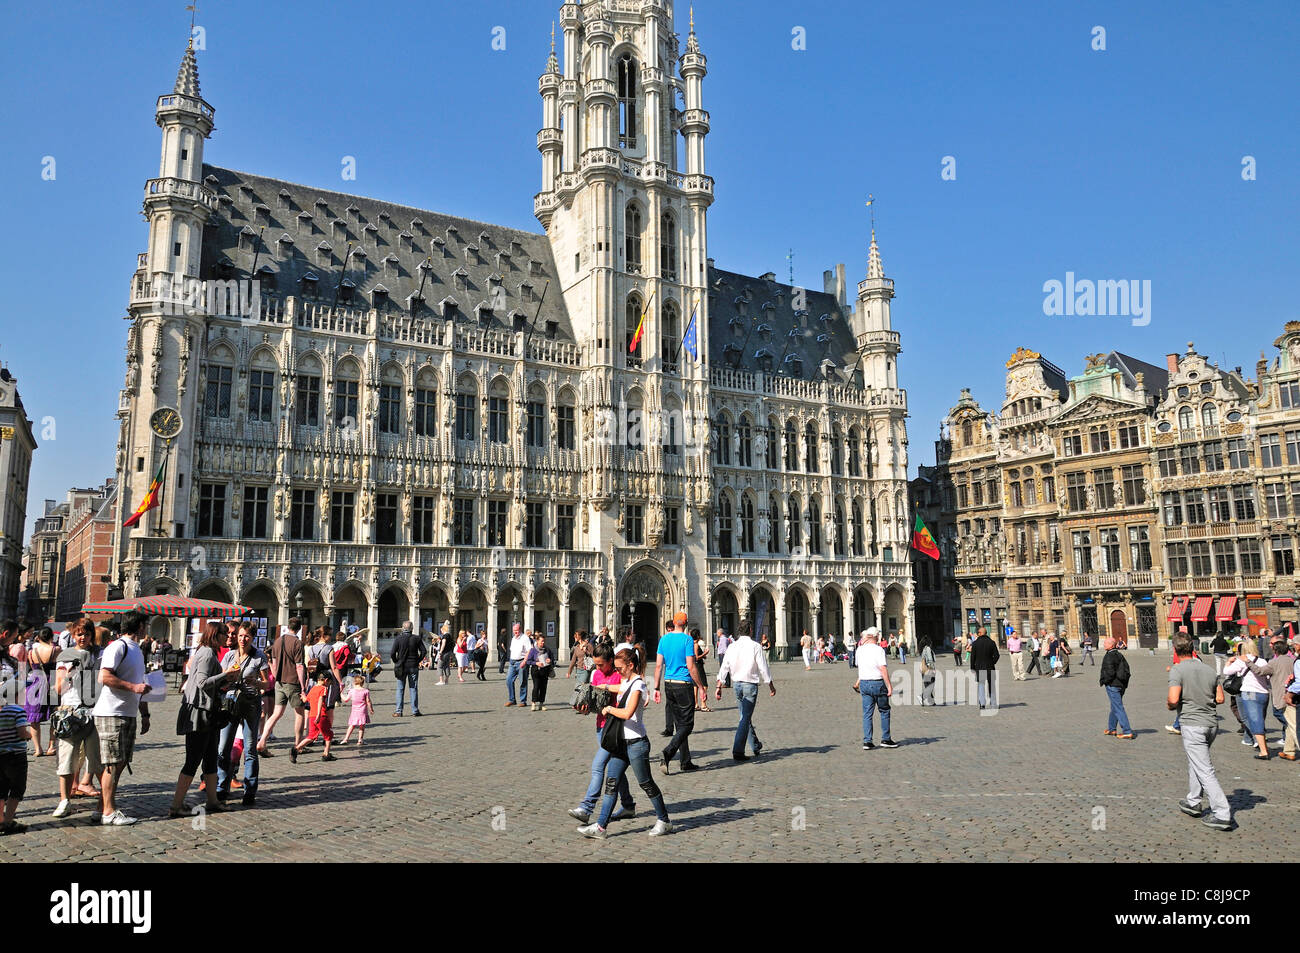 L'architecture, Belgique, Benelux, Bruxelles, Europe, gothique, du capital, de l'hôtel de ville, monument, l'administration de la ville, l'UNESCO, l'administrat Banque D'Images